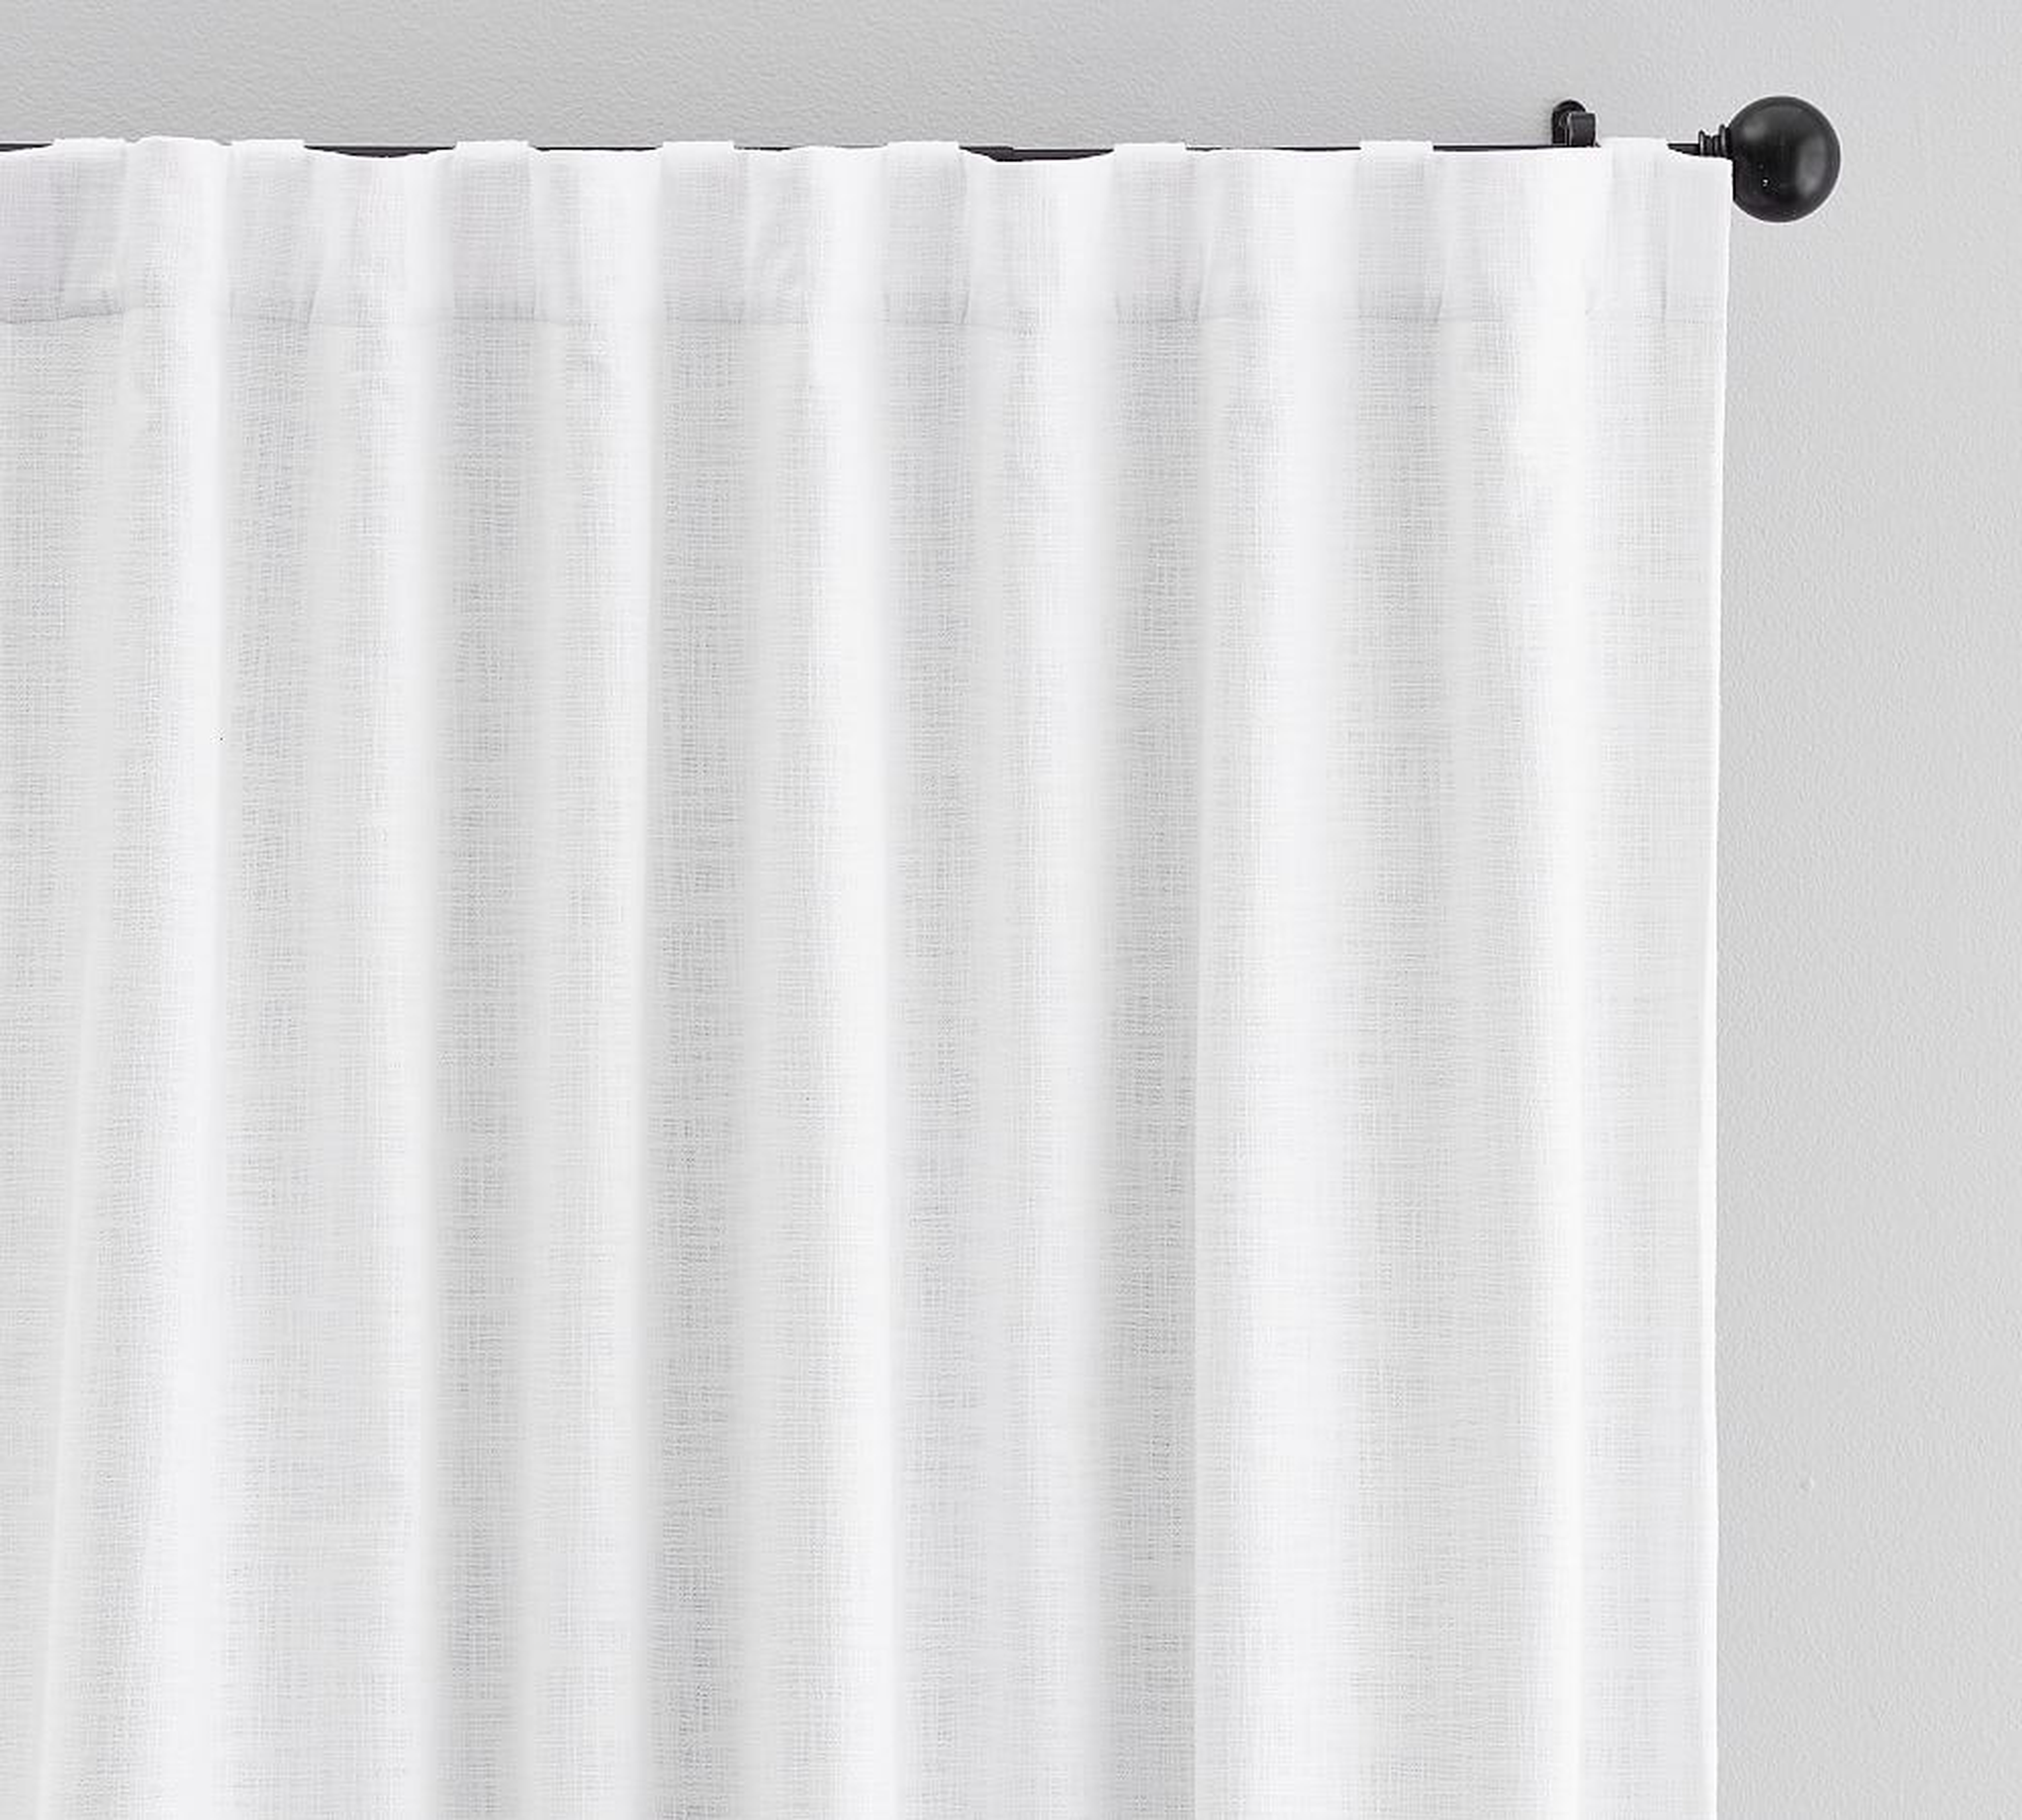 Seaton Textured Cotton Blackout Curtain, 100 x 84", White - Pottery Barn